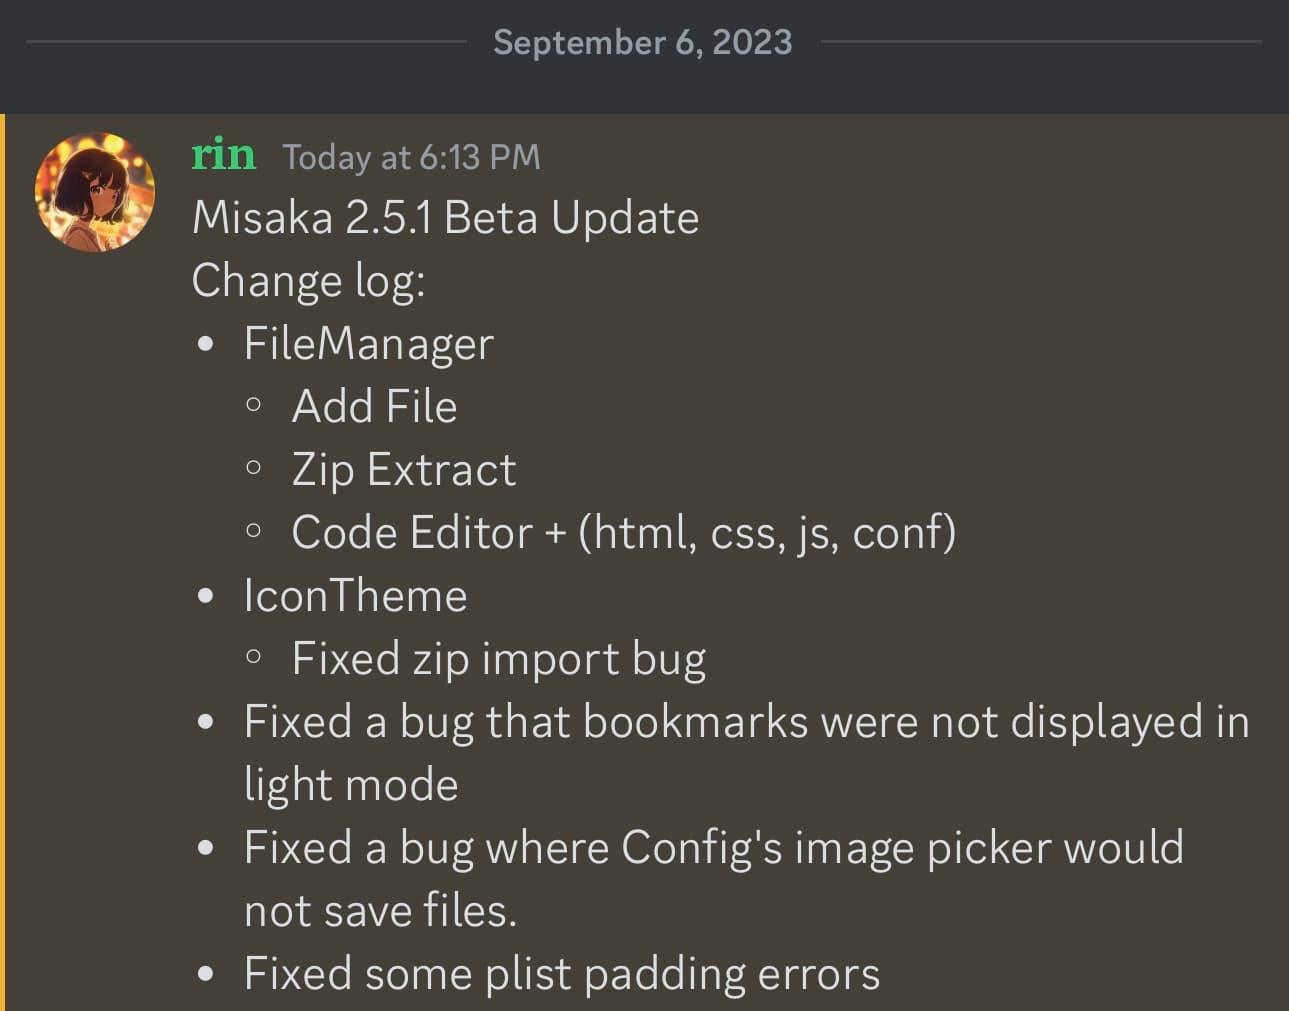 Misaka v2.5.1 update announced.